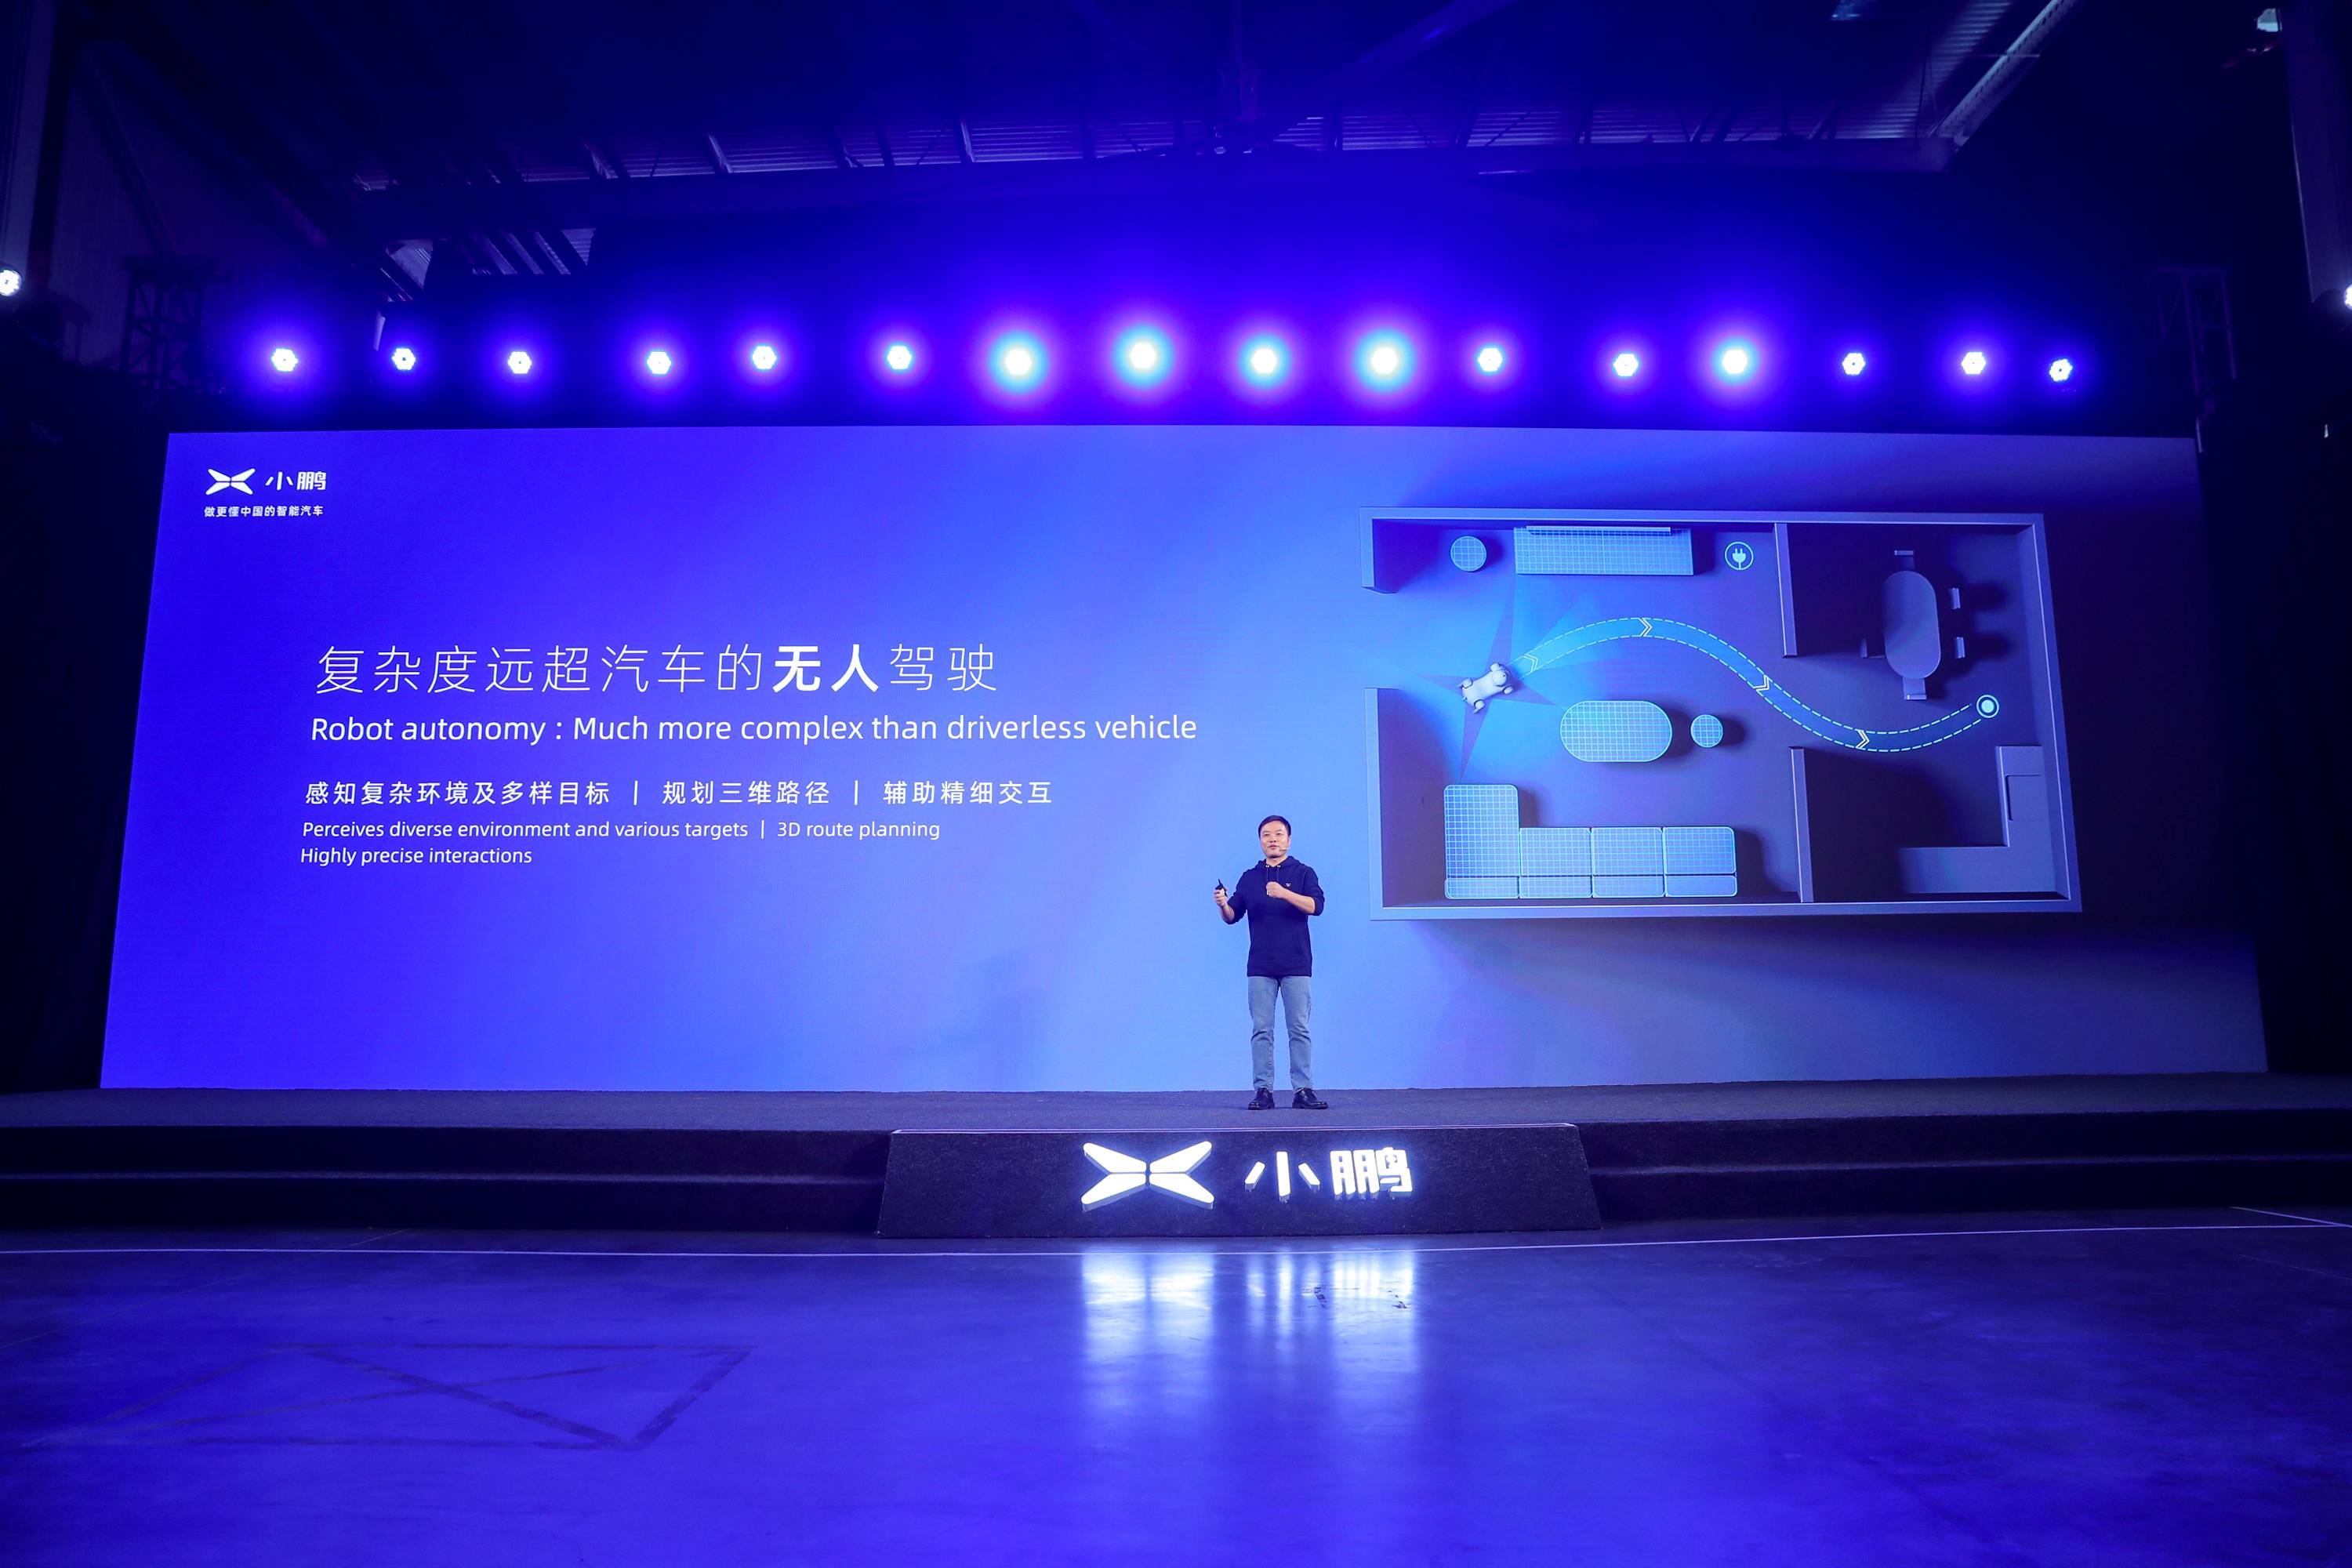 12 3 - Xiaopeng Automobile Technology Day: oltre al “super integratore” che percorre 200 chilometri in 5 minuti, c’è anche questa macchina volante da un milione di livelli